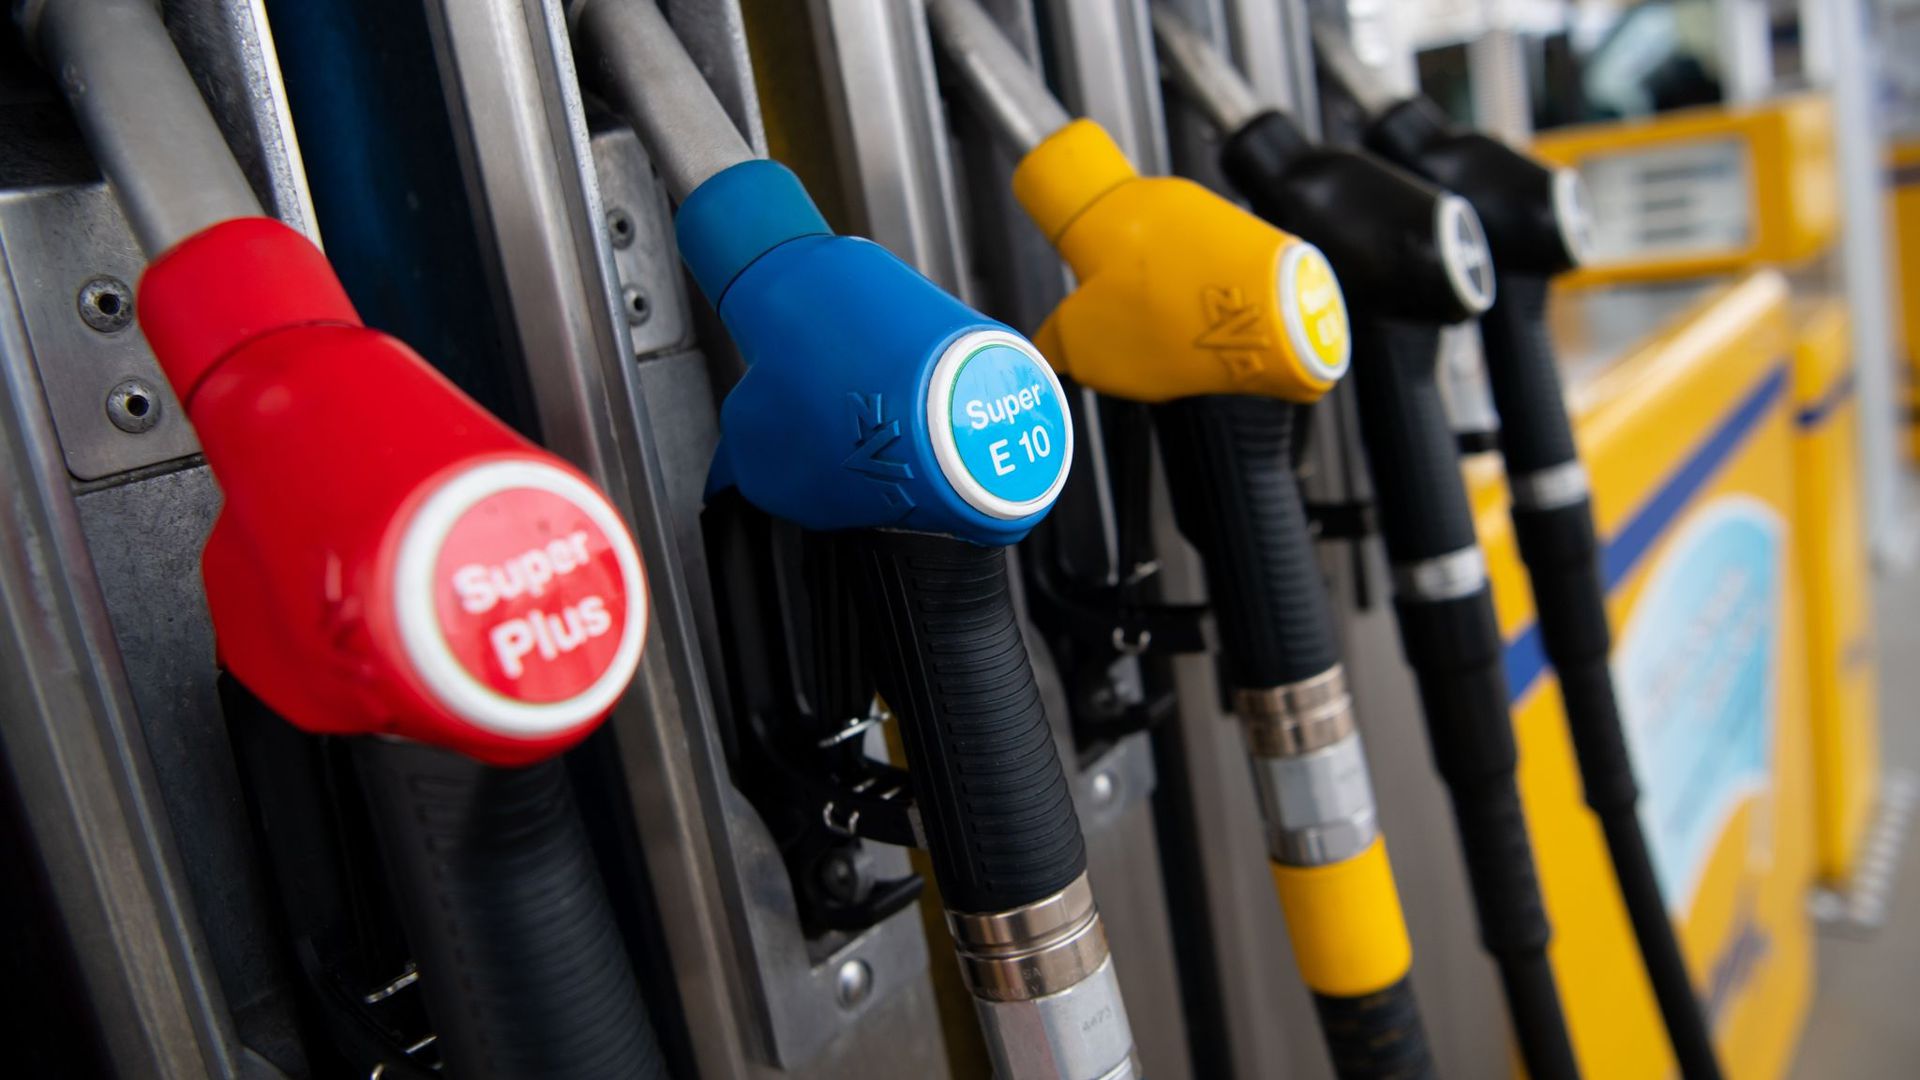 Zapfsäule an einer Tankstelle. Seit einigen Monaten steigen die Energiepreise überdurchschnittlich an.